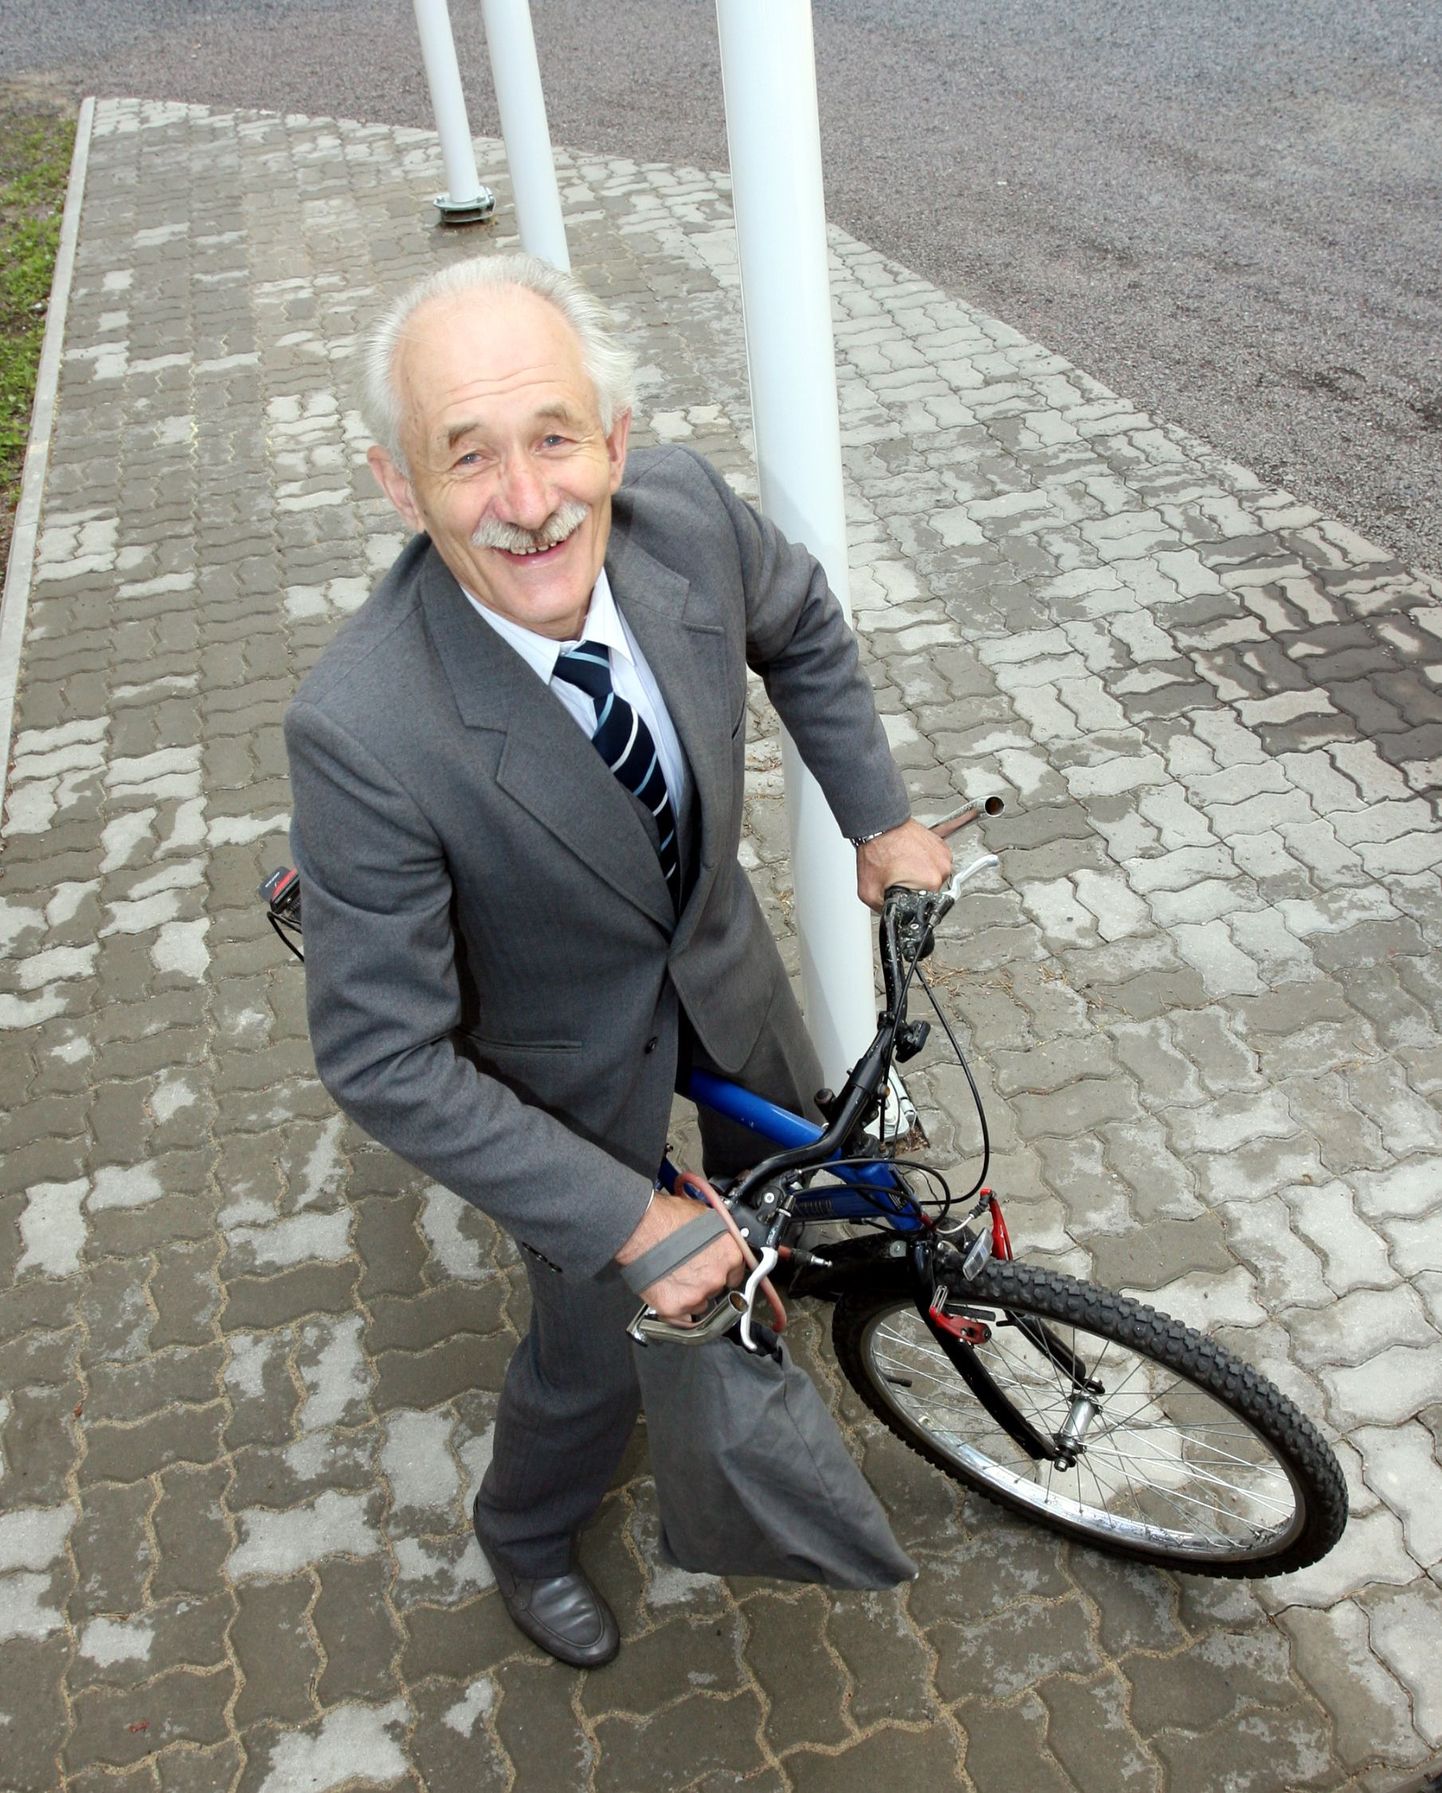 Nõmmelane Enno Himberg tuli valima ülikonna ja jalgrattaga.